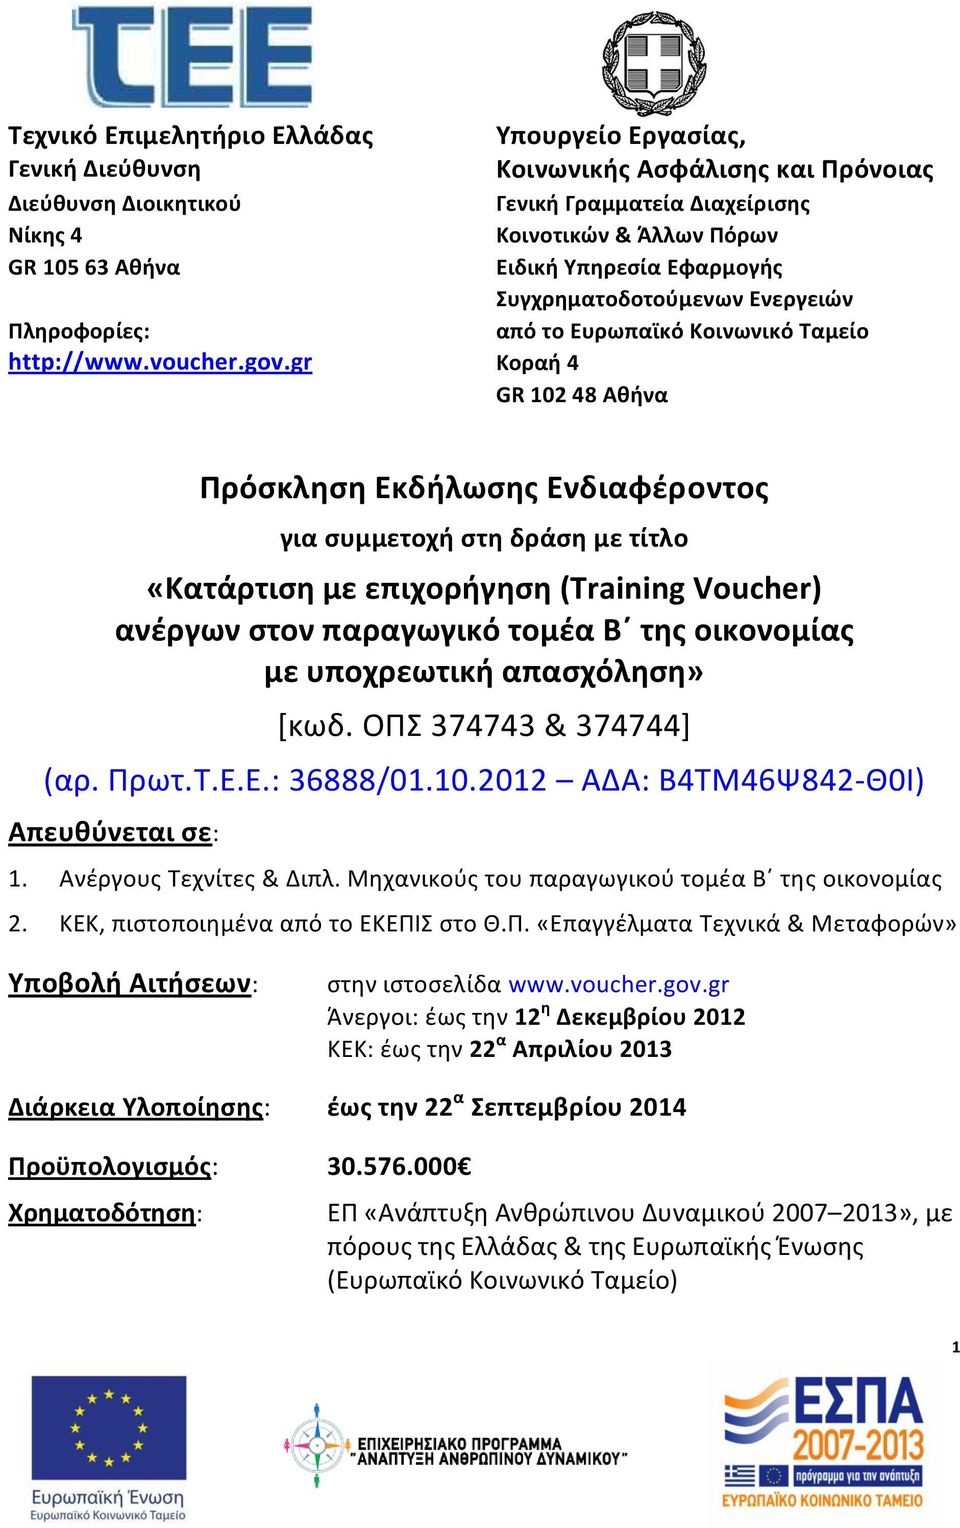 Ευρωπαϊκό Κοινωνικό Ταμείο Πρόσκληση Εκδήλωσης Ενδιαφέροντος για συμμετοχή στη δράση με τίτλο «Κατάρτιση με επιχορήγηση (Training Voucher) ανέργων στον παραγωγικό τομέα Β της οικονομίας με